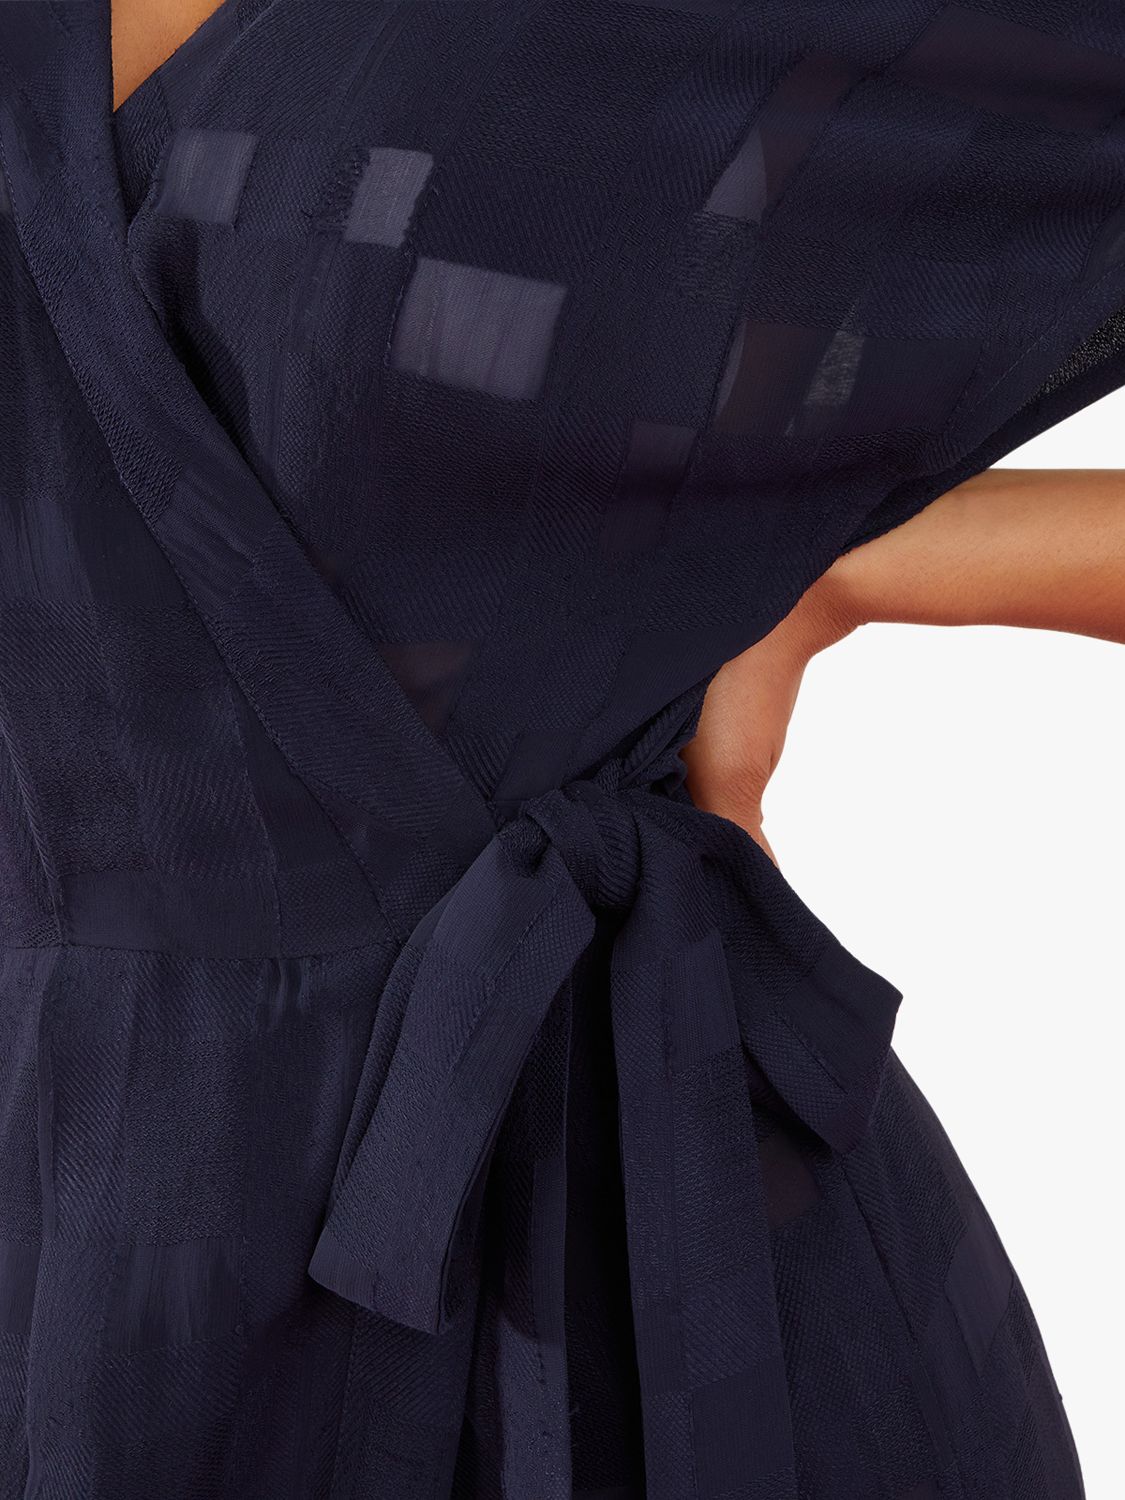 Accessorize Geo Jacquard Wrap Dress, Dark Blue, XS